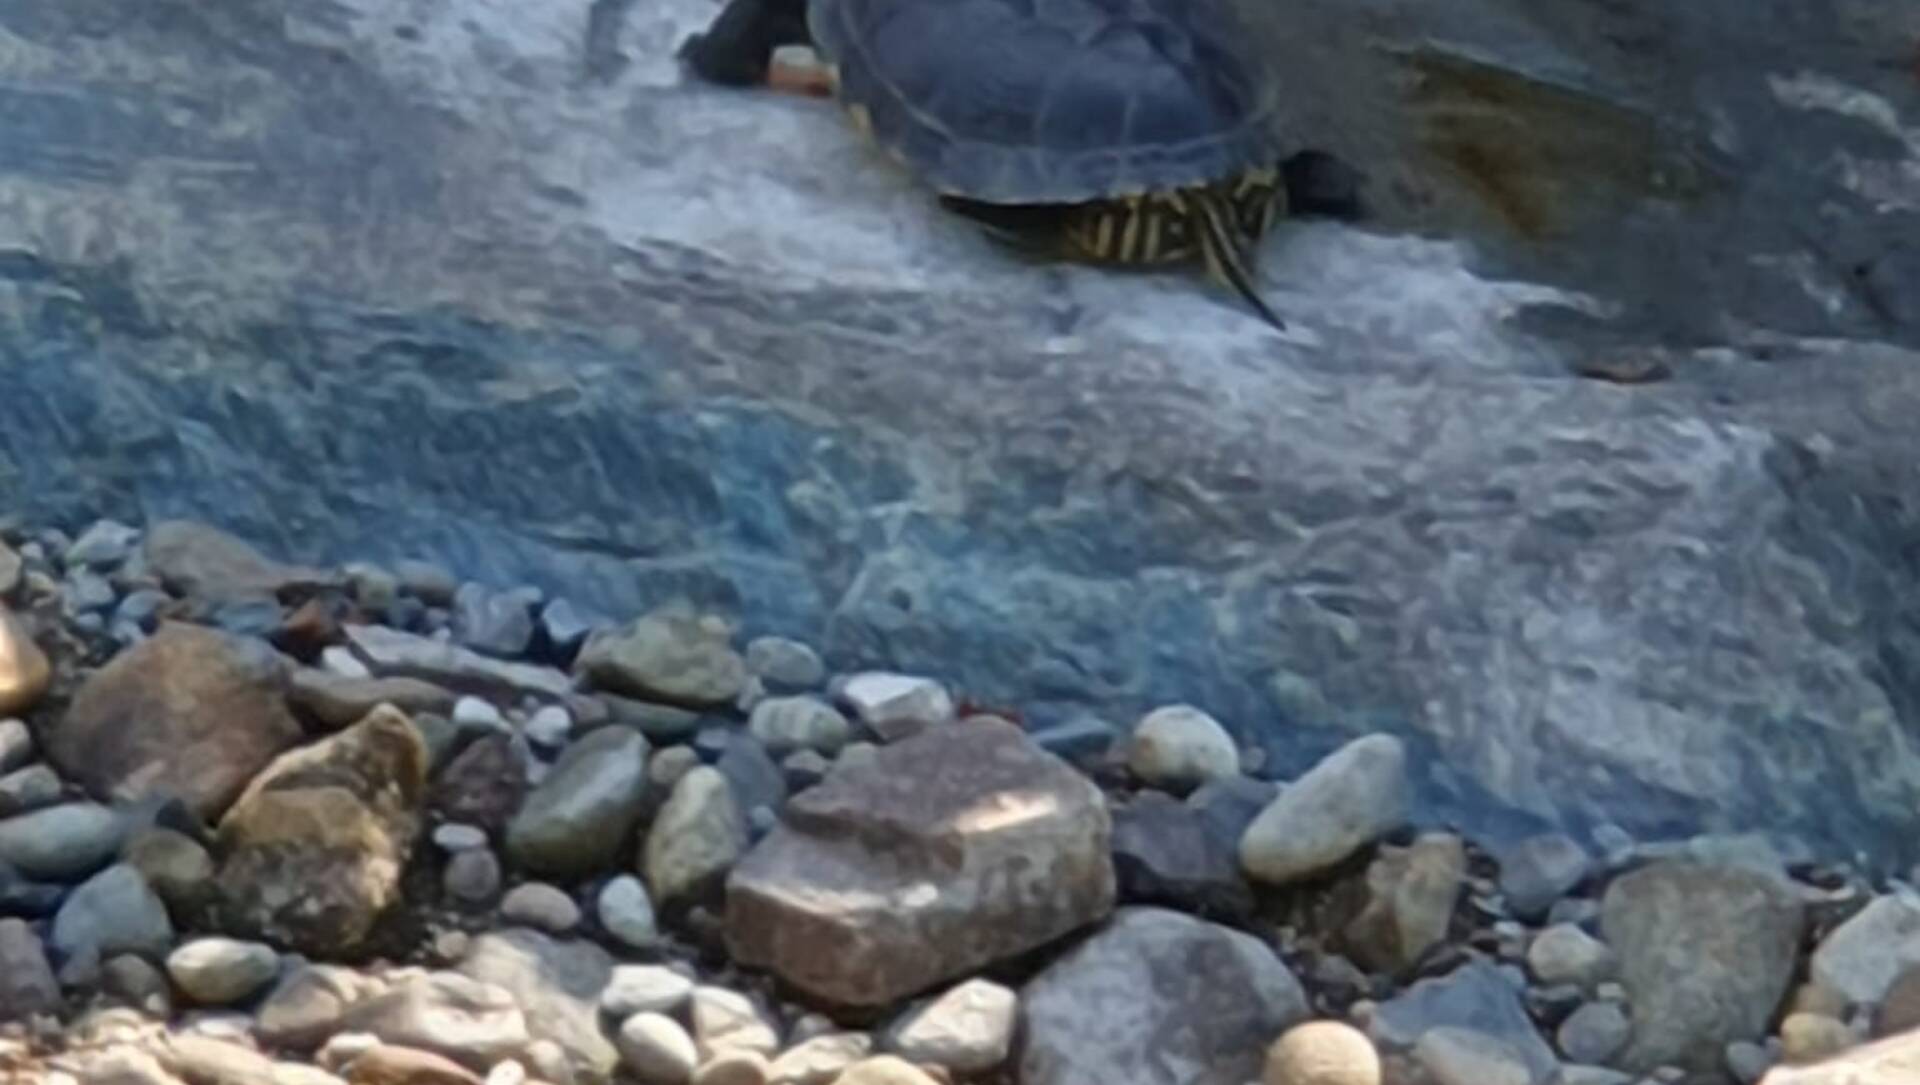 Caccia alla tartaruga nel torrente Lura a Saronno